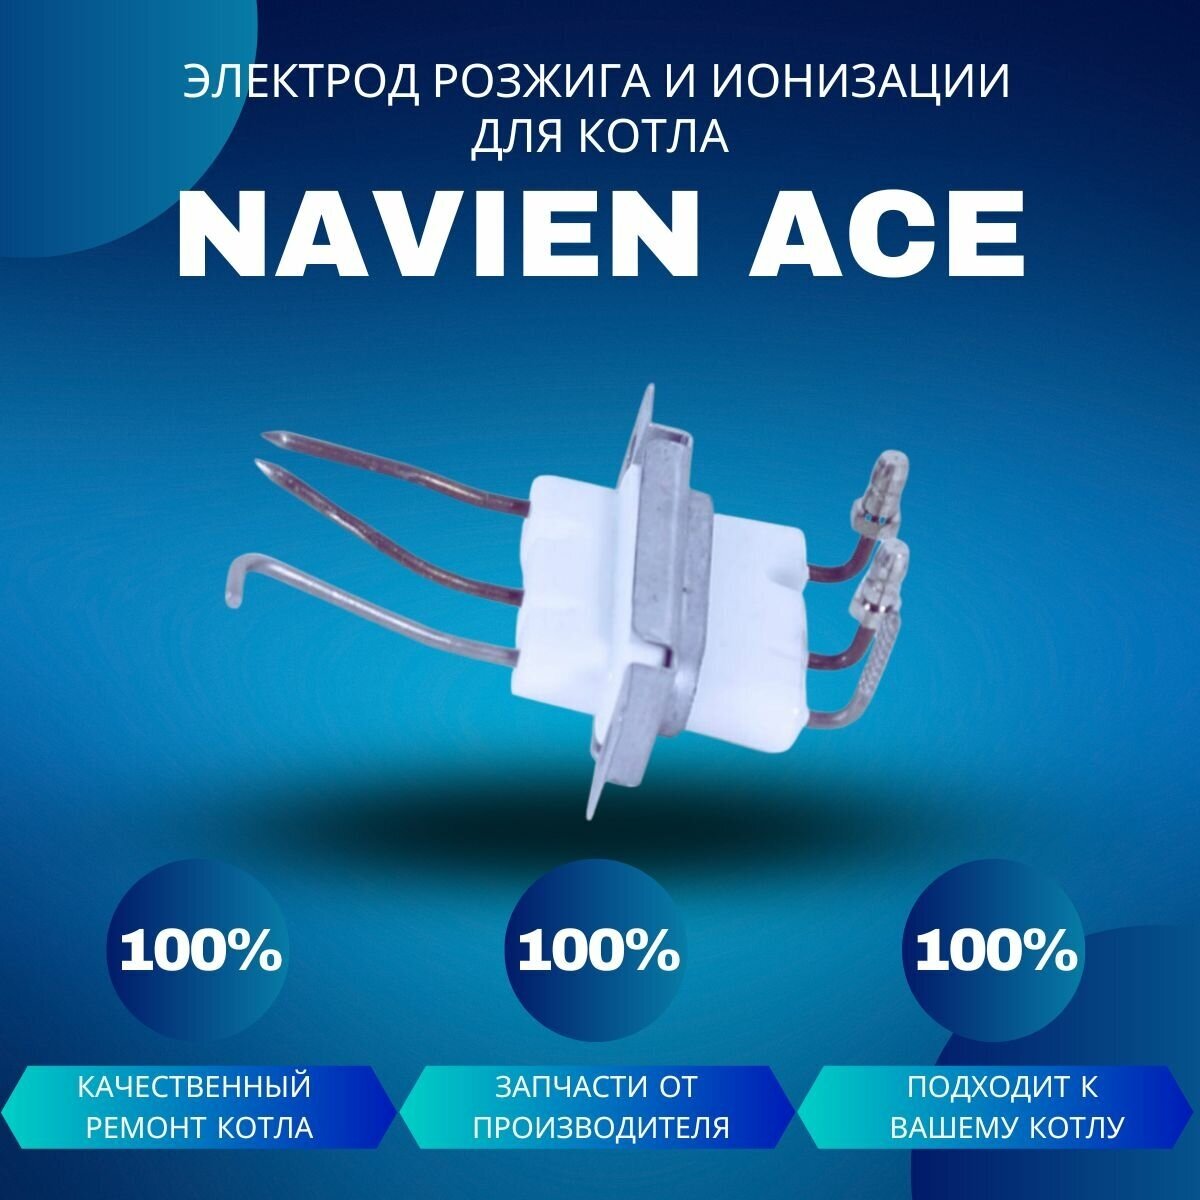 Электрод розжига и ионизации для котла Navien Ace